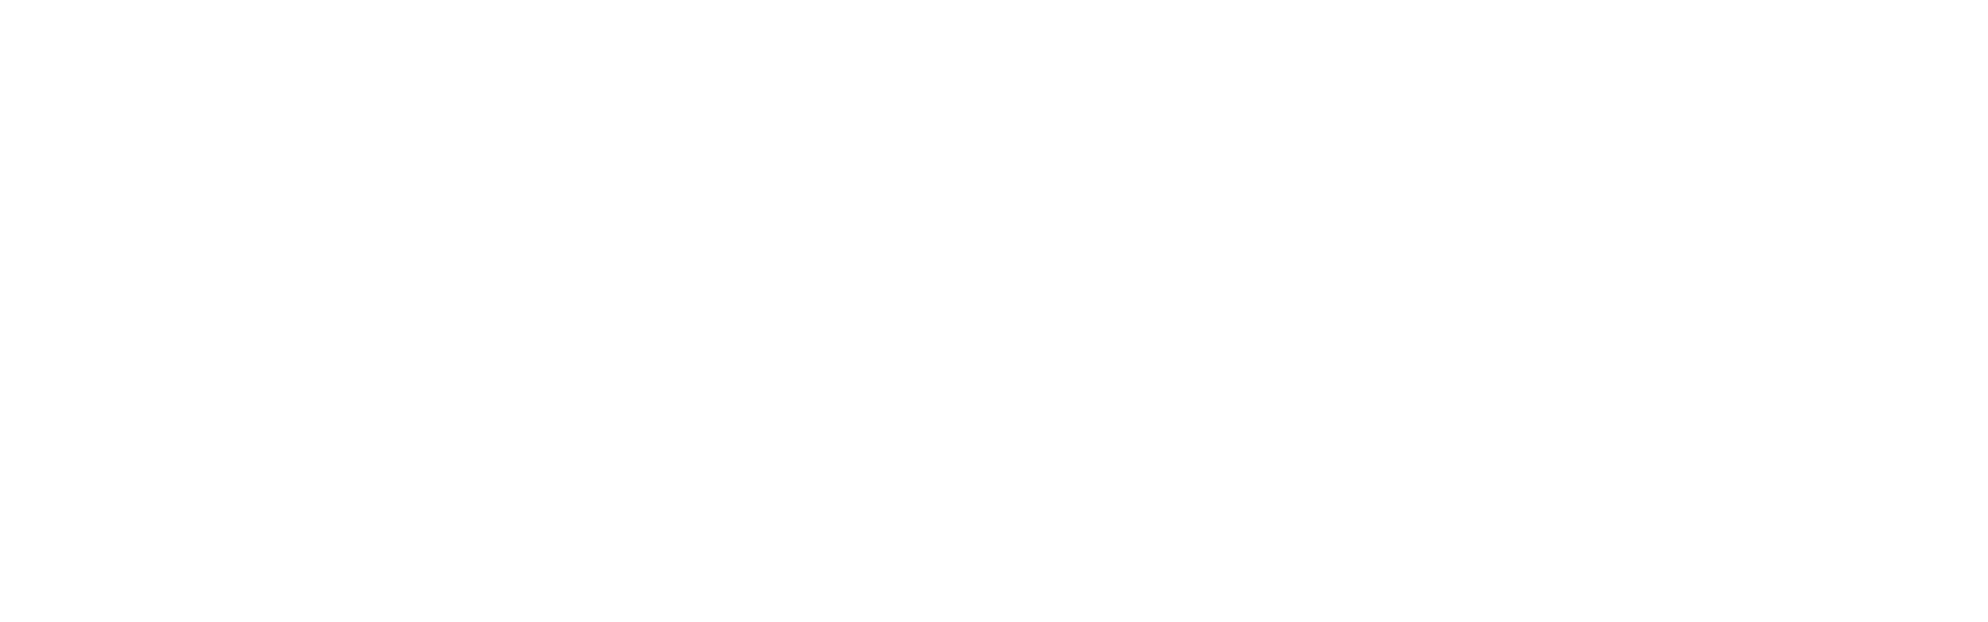 OpenFF NAGL 0.3.2+0.g64f9c25.dirty documentation logo